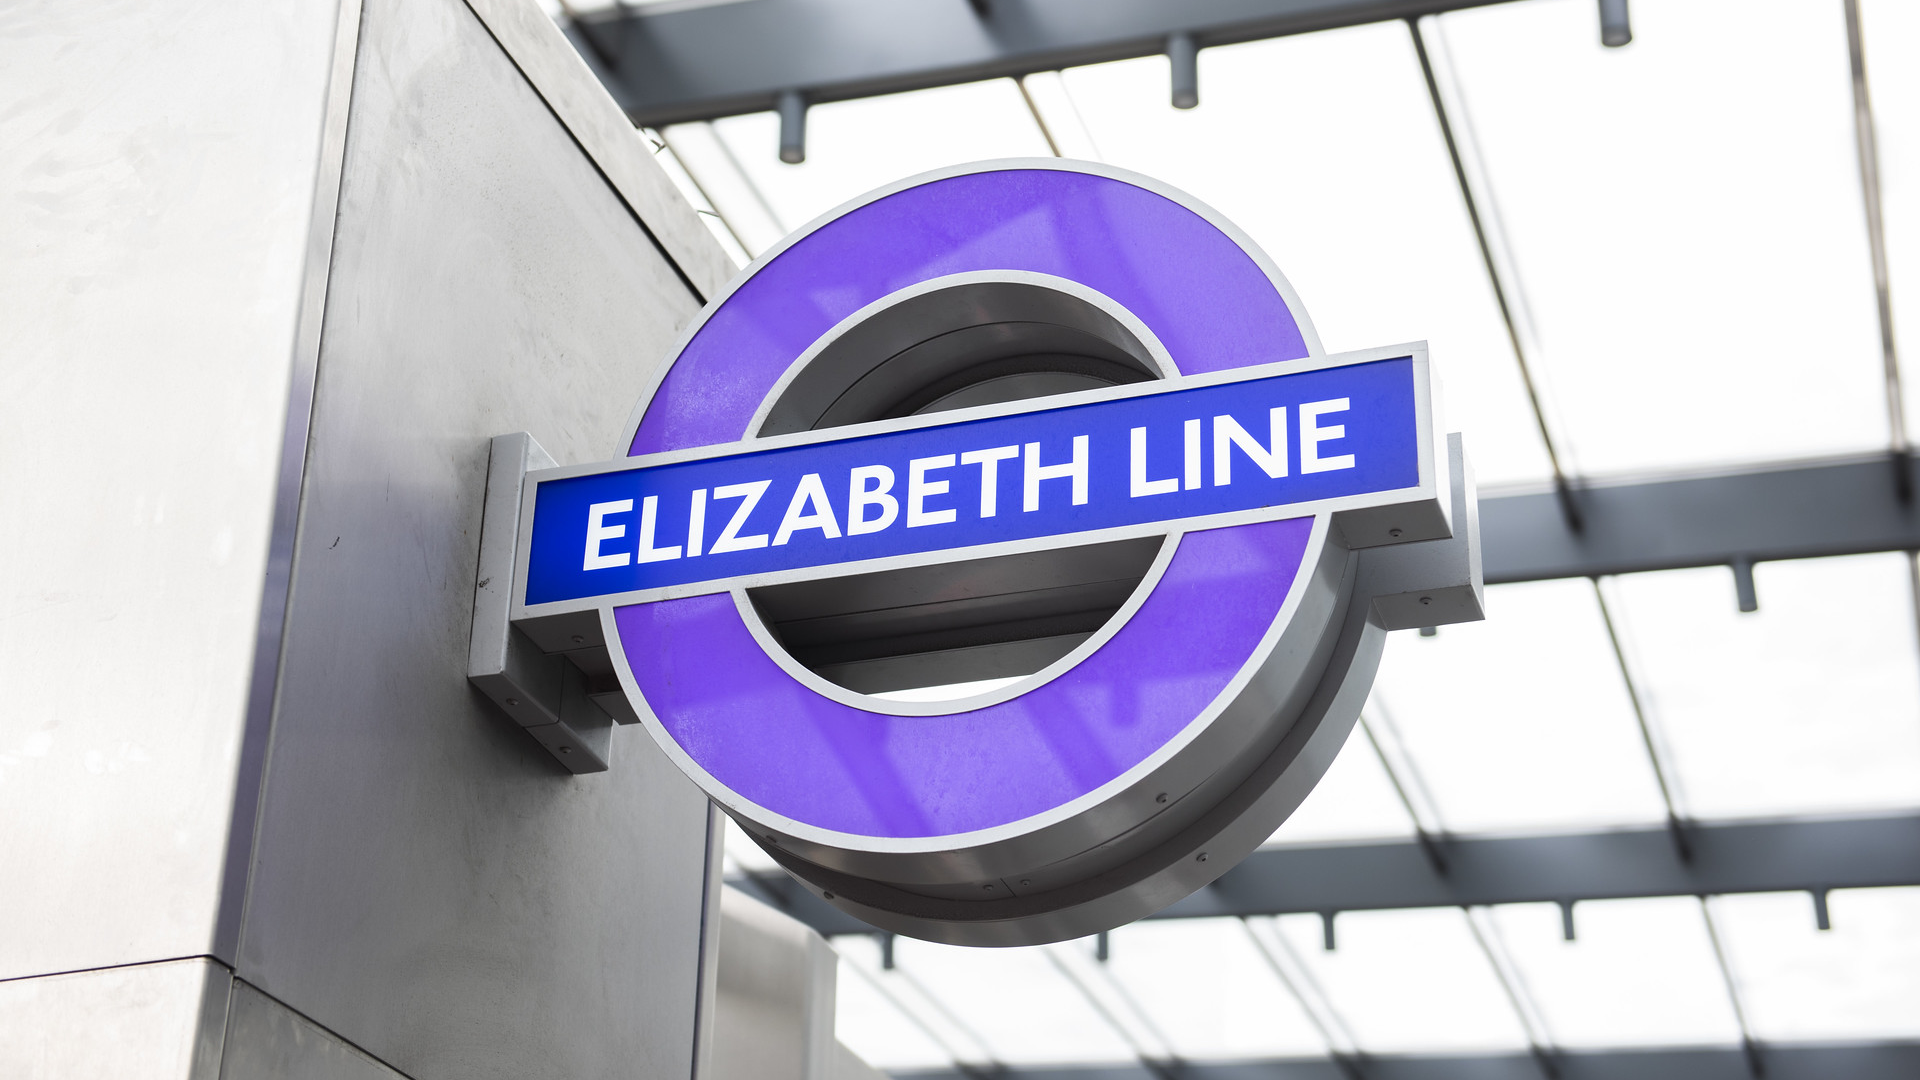 Londens fabuleuze Lizz Line